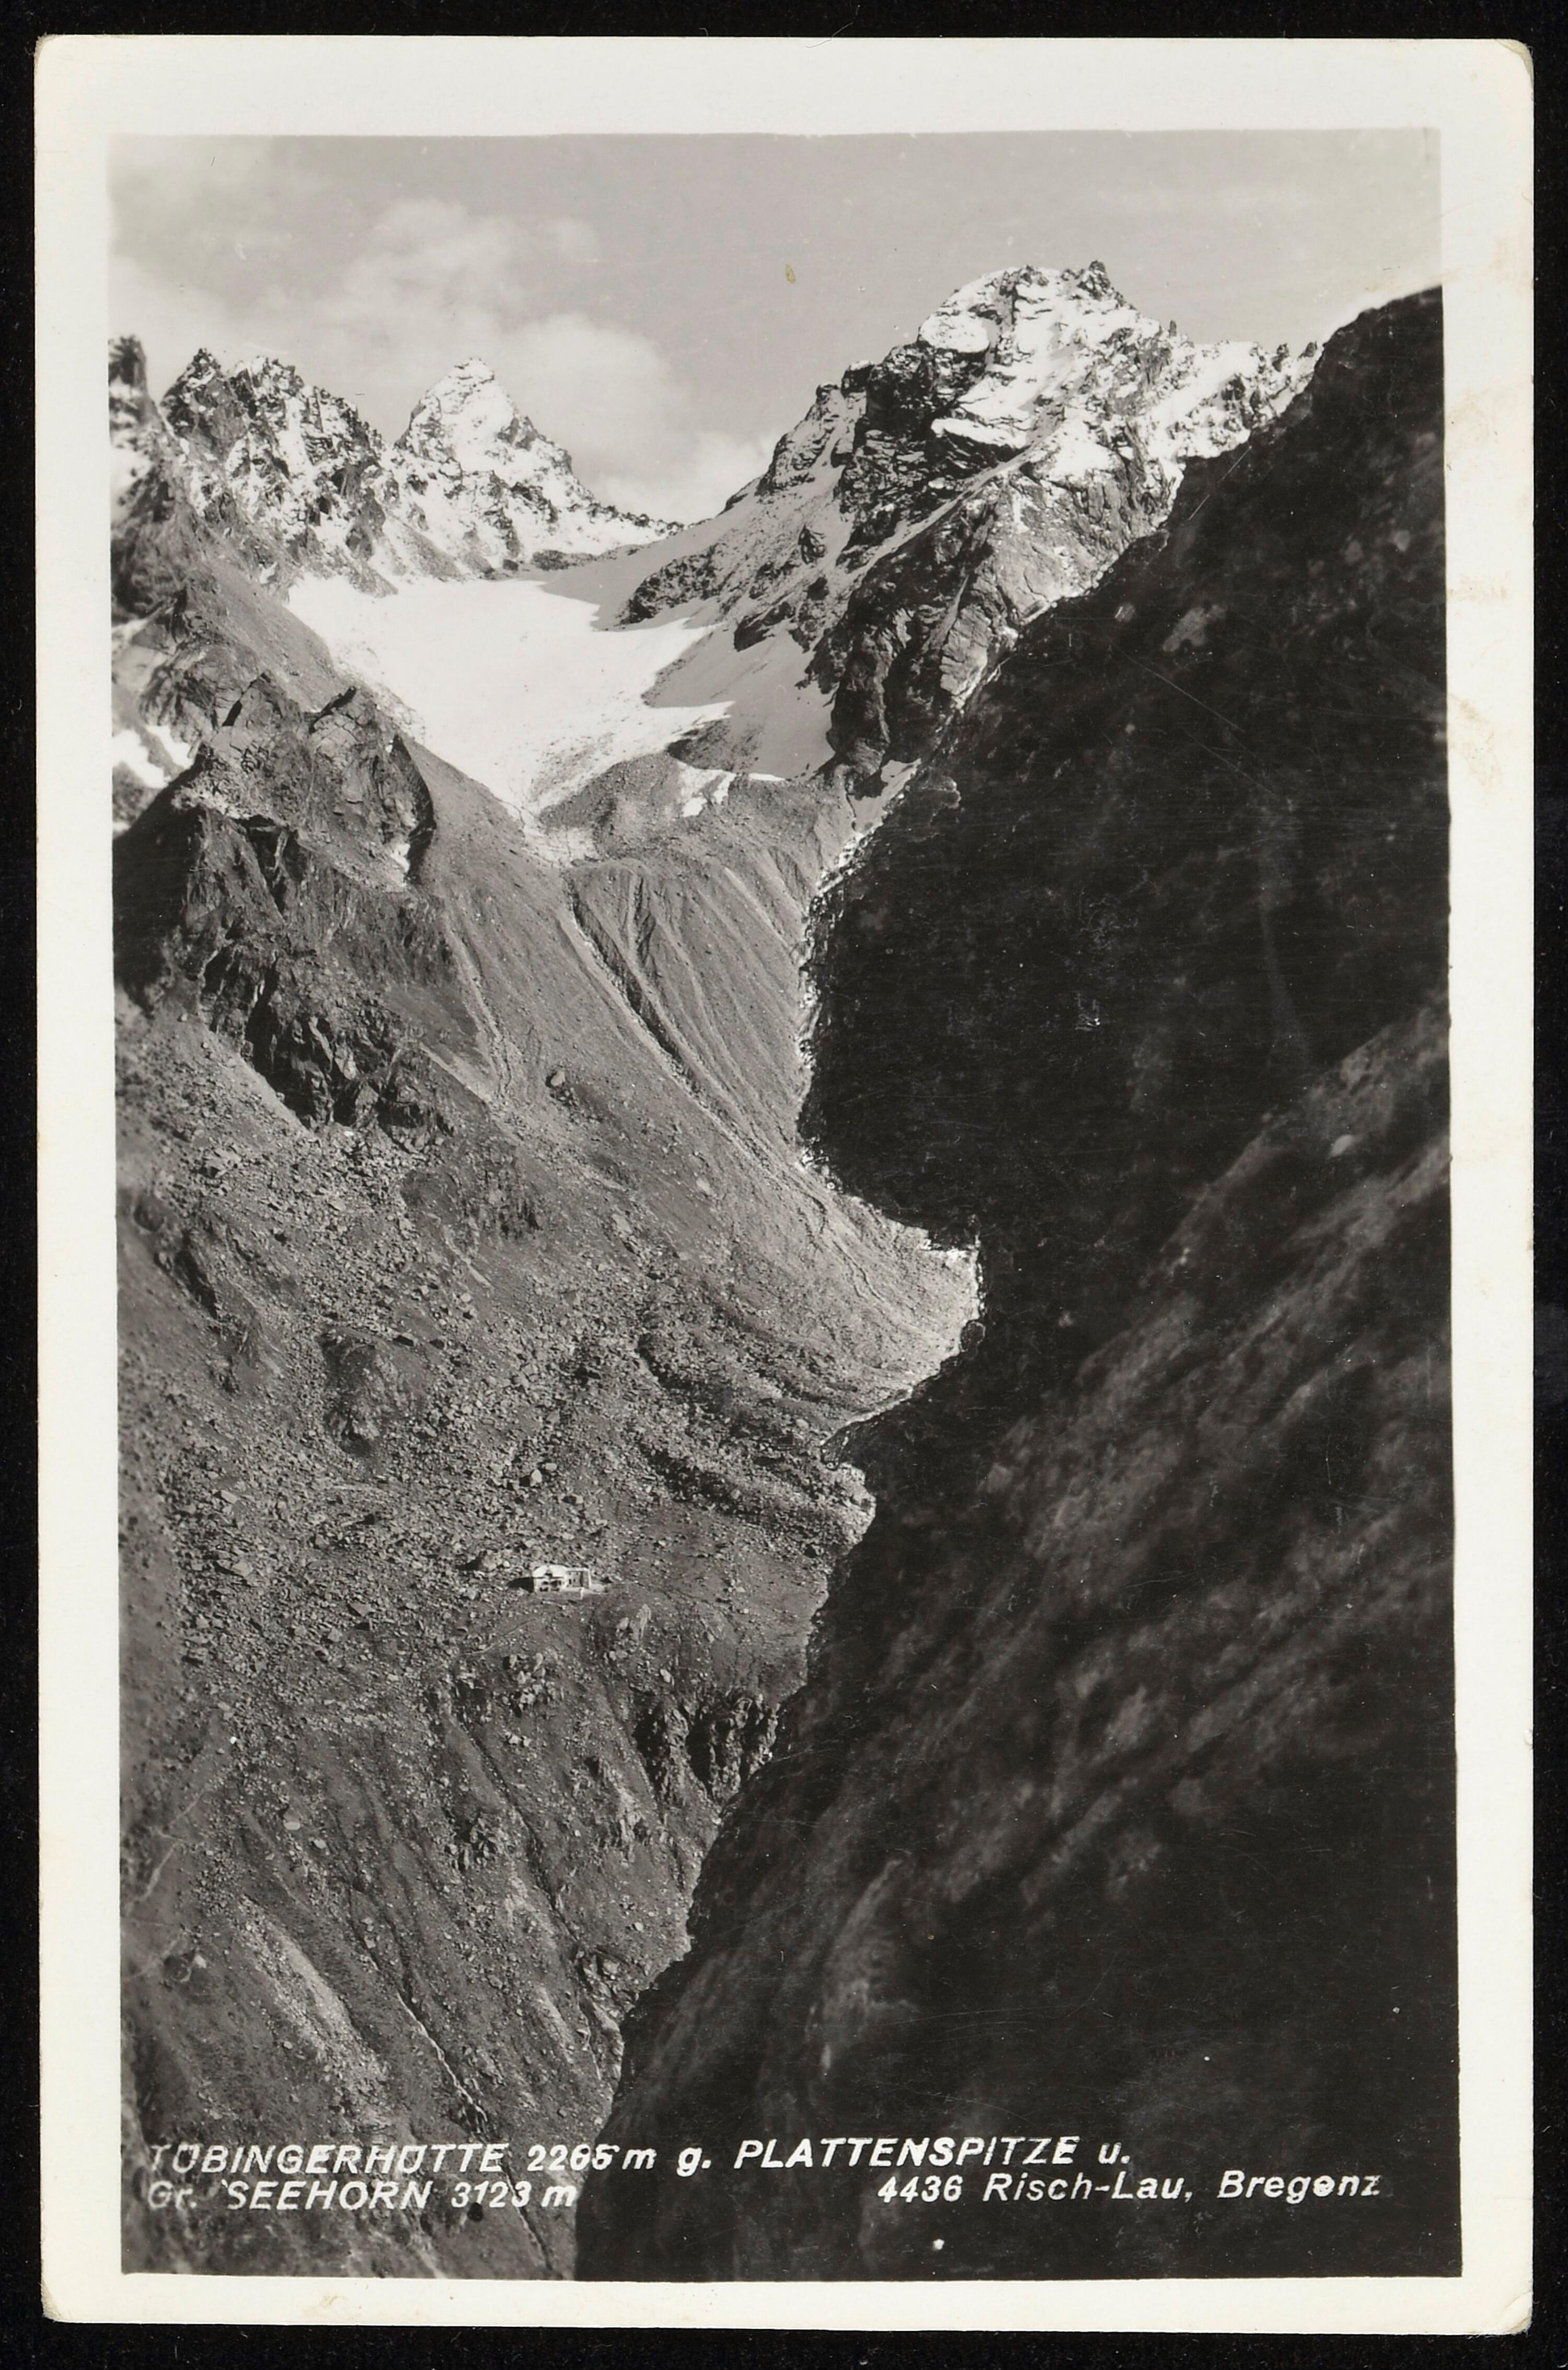 [Gaschurn] Tübingerhütte 2265 m g. Plattenspitze u.></div>


    <hr>
    <div class=